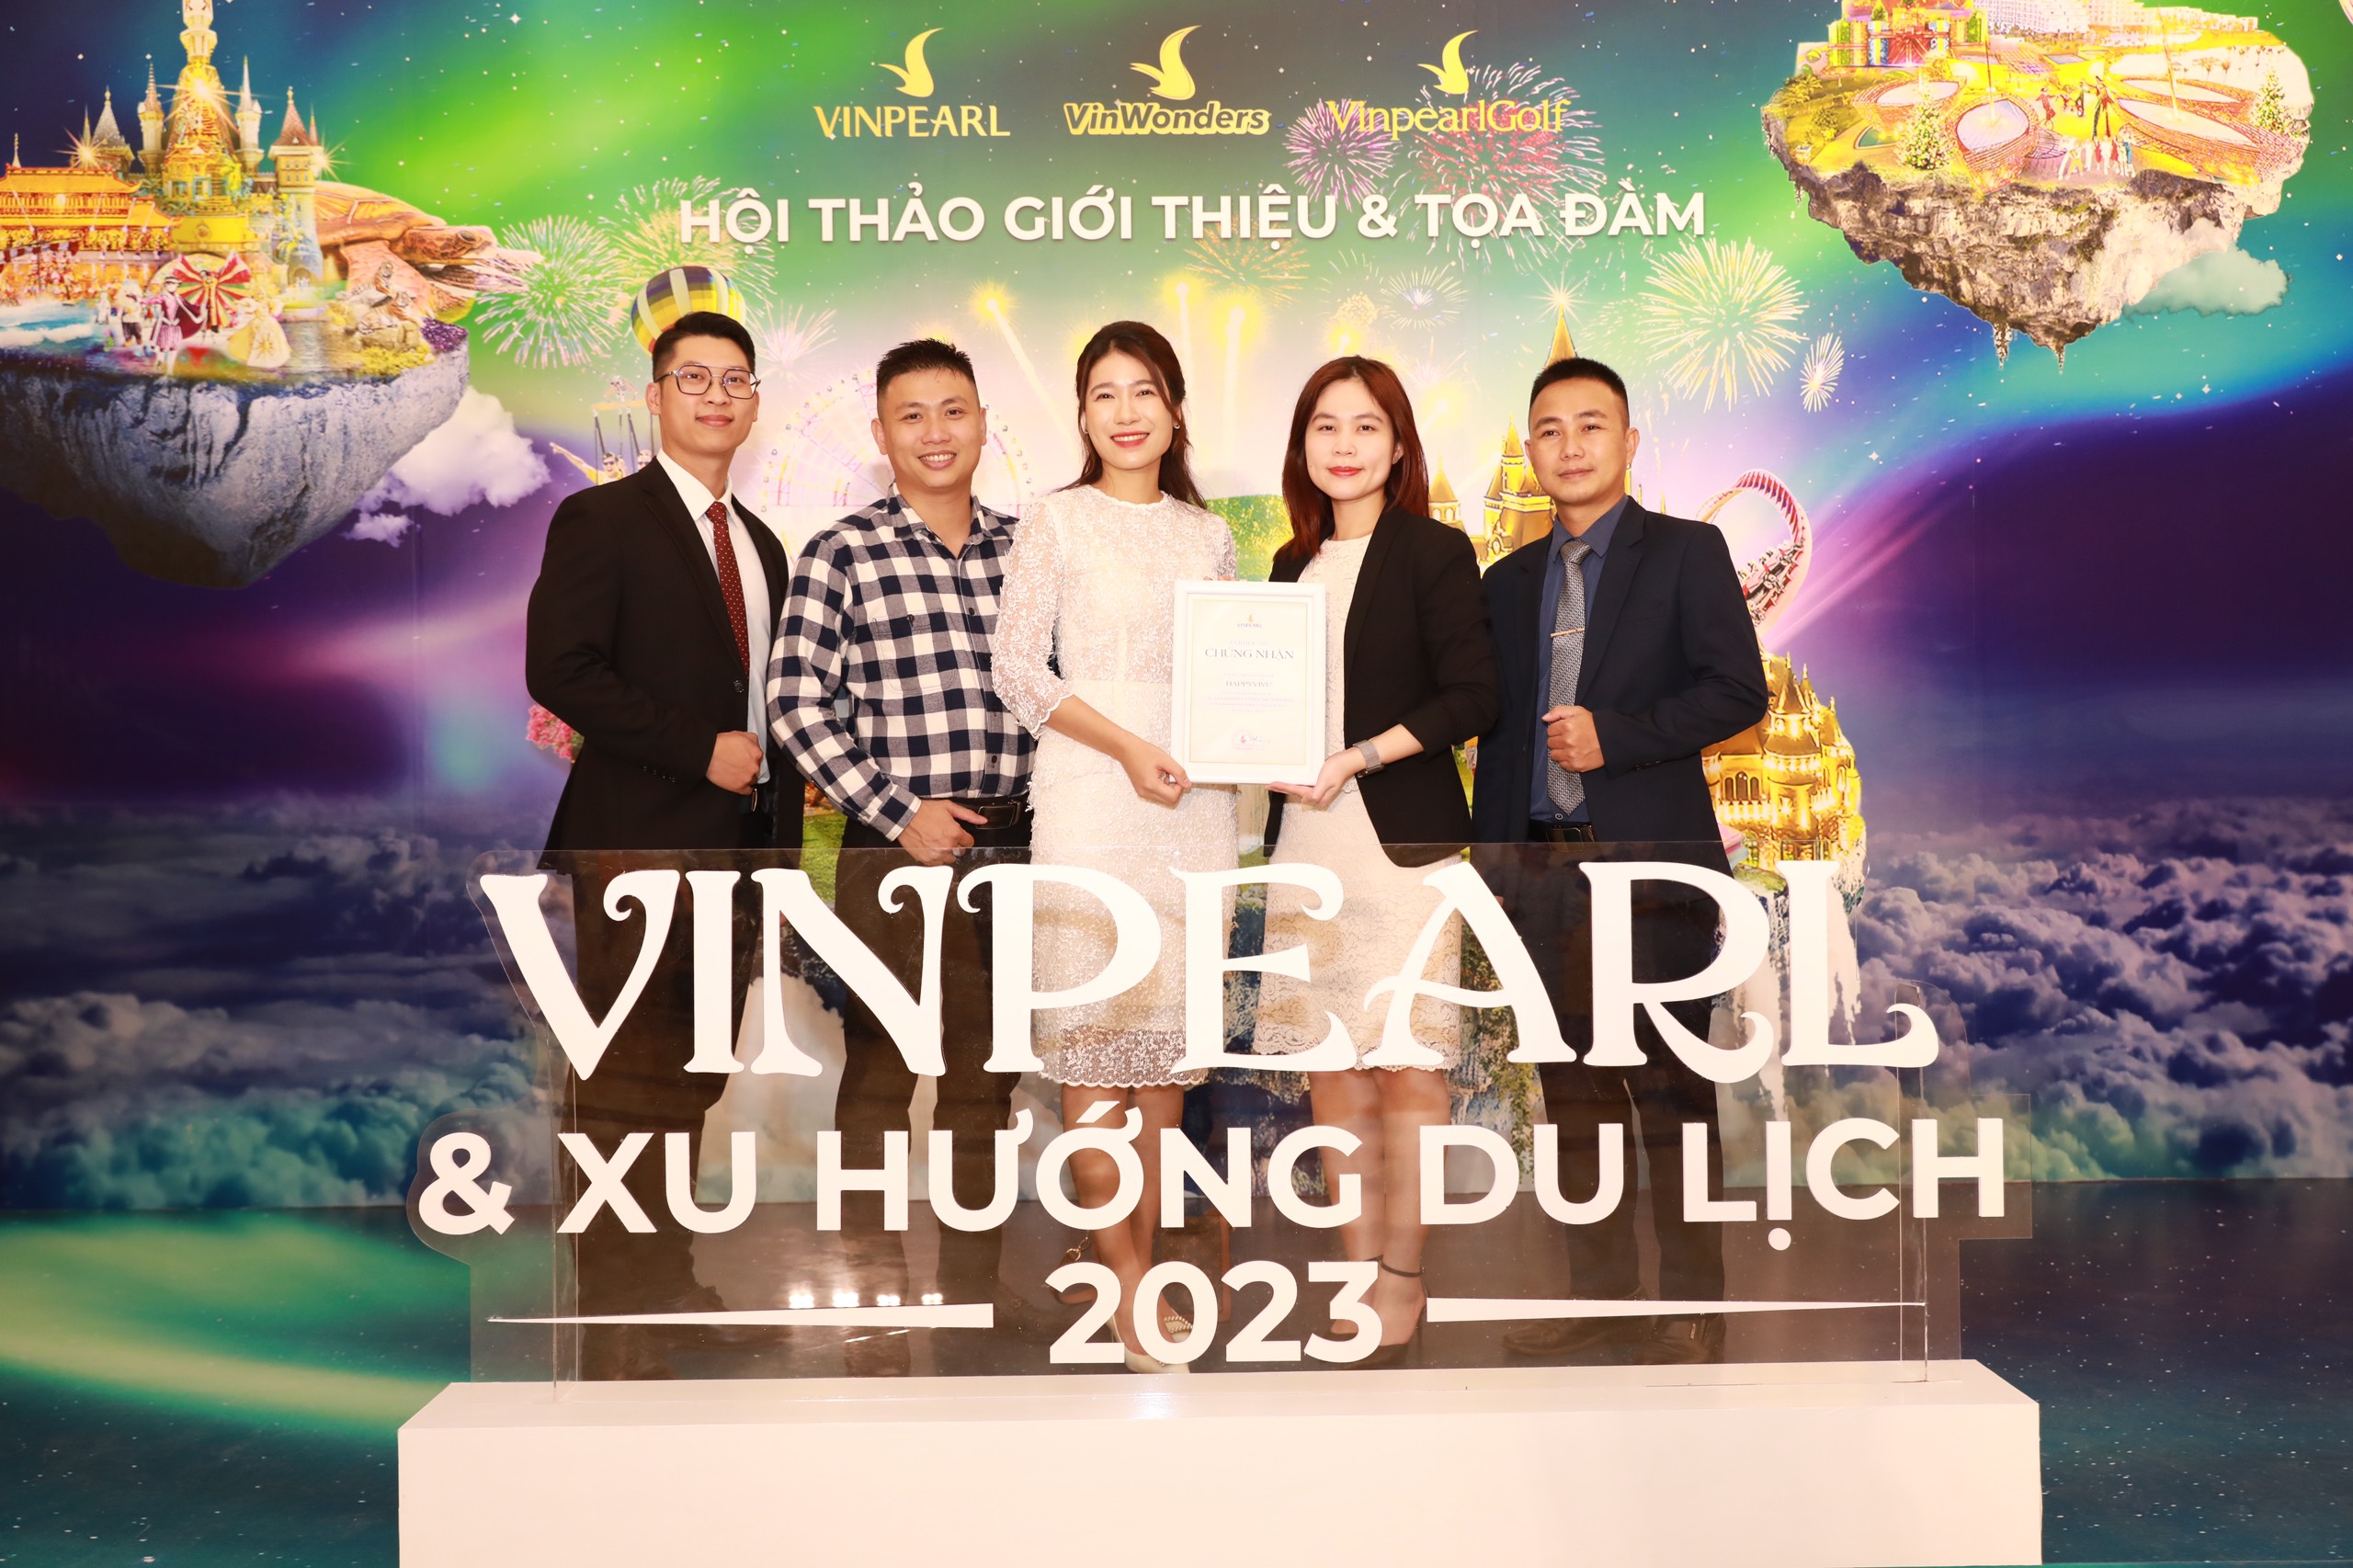 Happy Vivu ký kết trở thành đối tác chiến lược của Vinpearl 2023